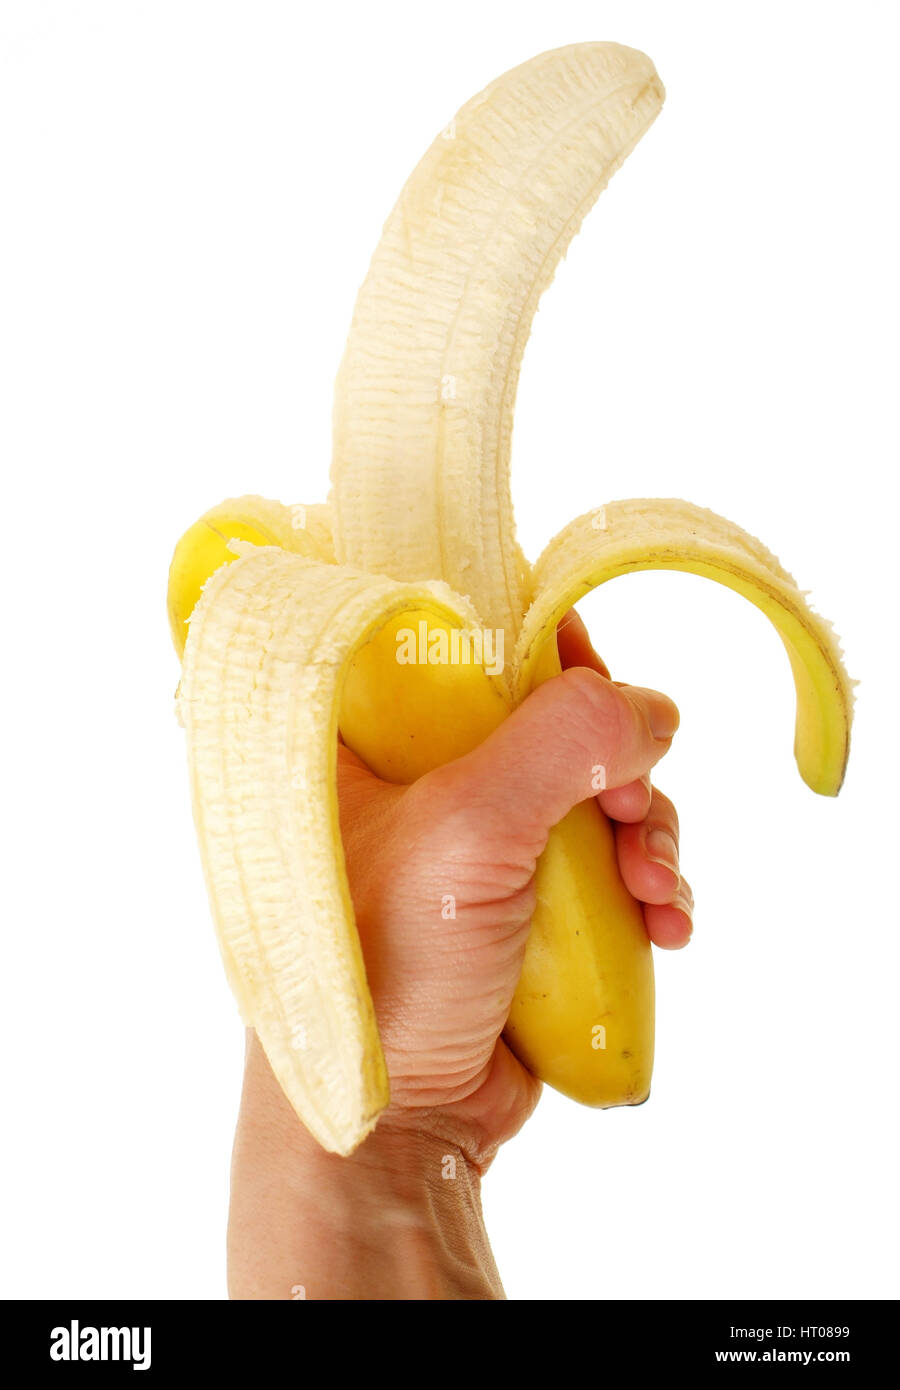 Geschaelte Banane in der Hand - Banane pelées à la main Banque D'Images